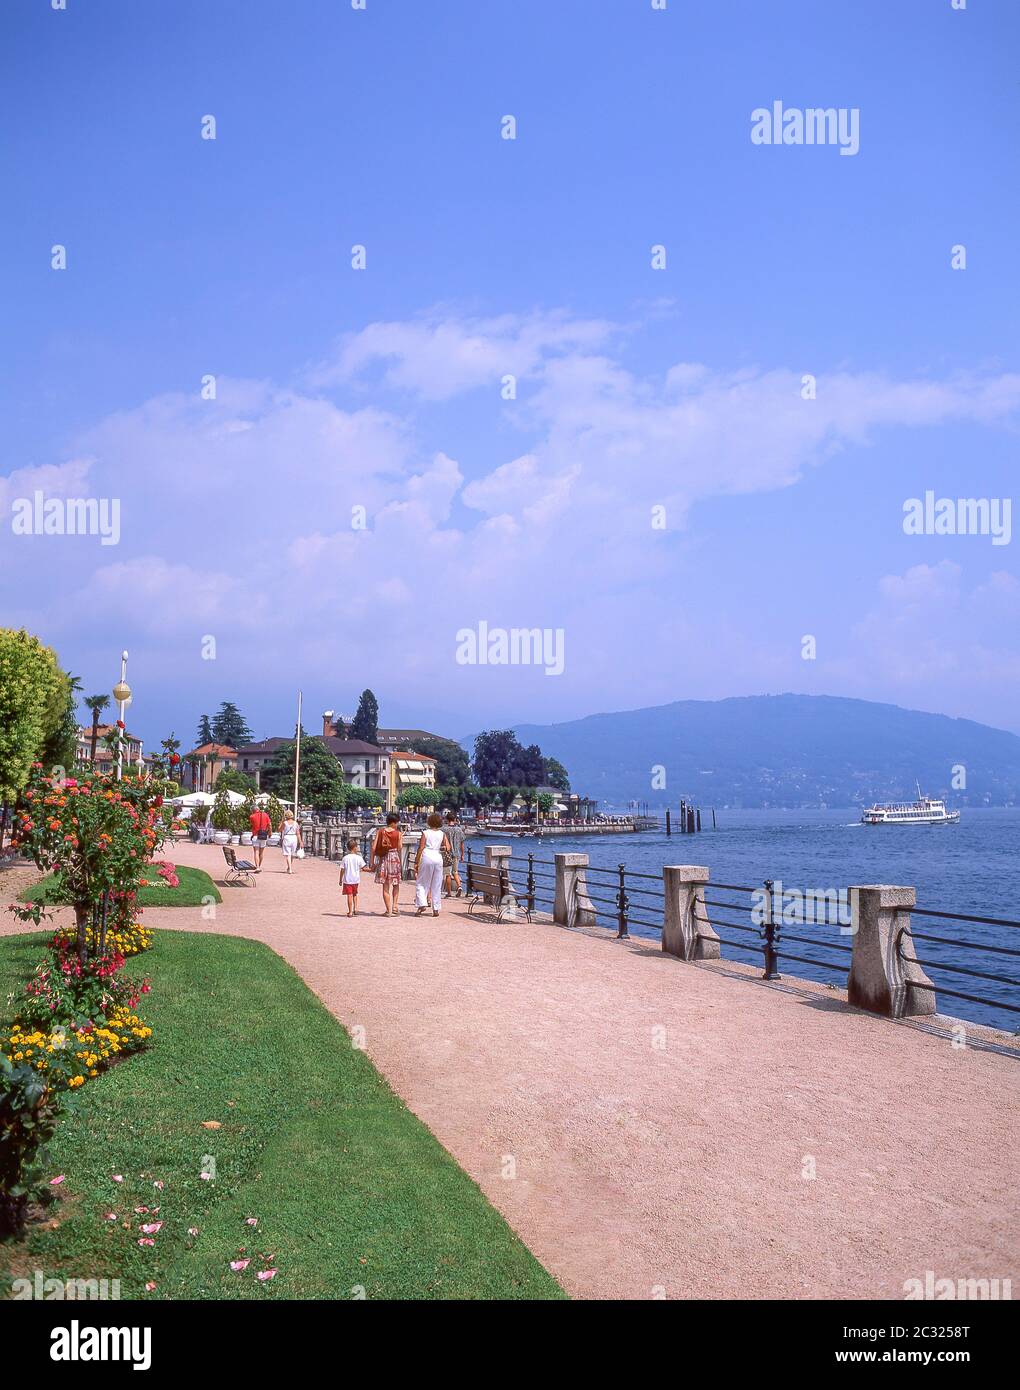 Promenade du bord de mer du lac majeur, Baveno, province de Verbano-Cusio-Ossola, région Piémont, Italie Banque D'Images